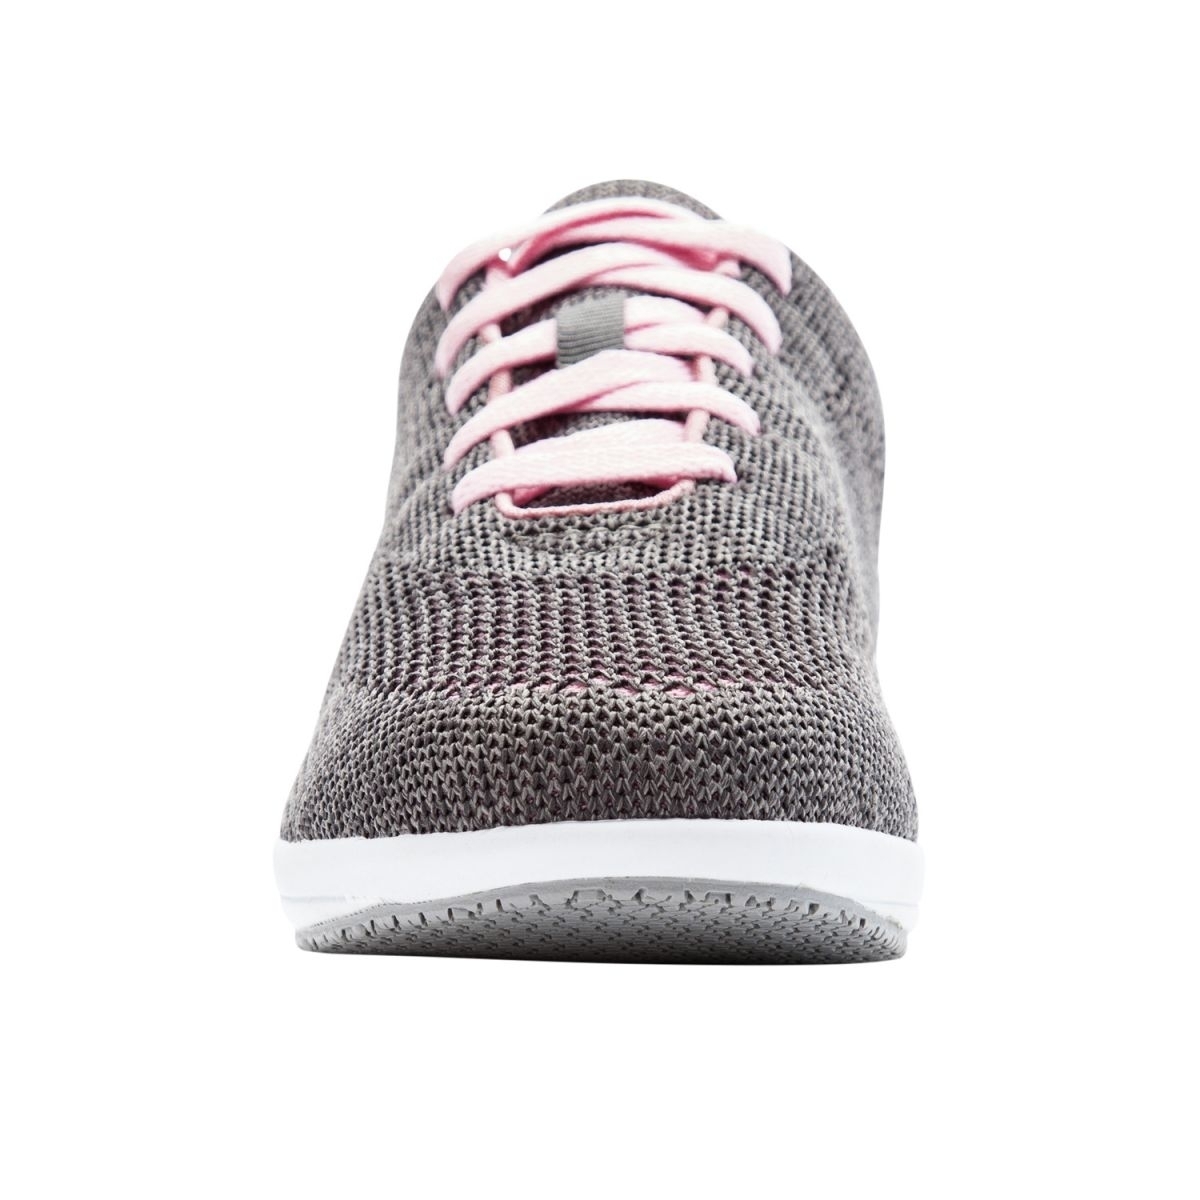 Propet Women's Washable Walker Evolution Sneaker Grey/Pink - WCS012MGPI GREY/PINK - GREY/PINK, 10-2E